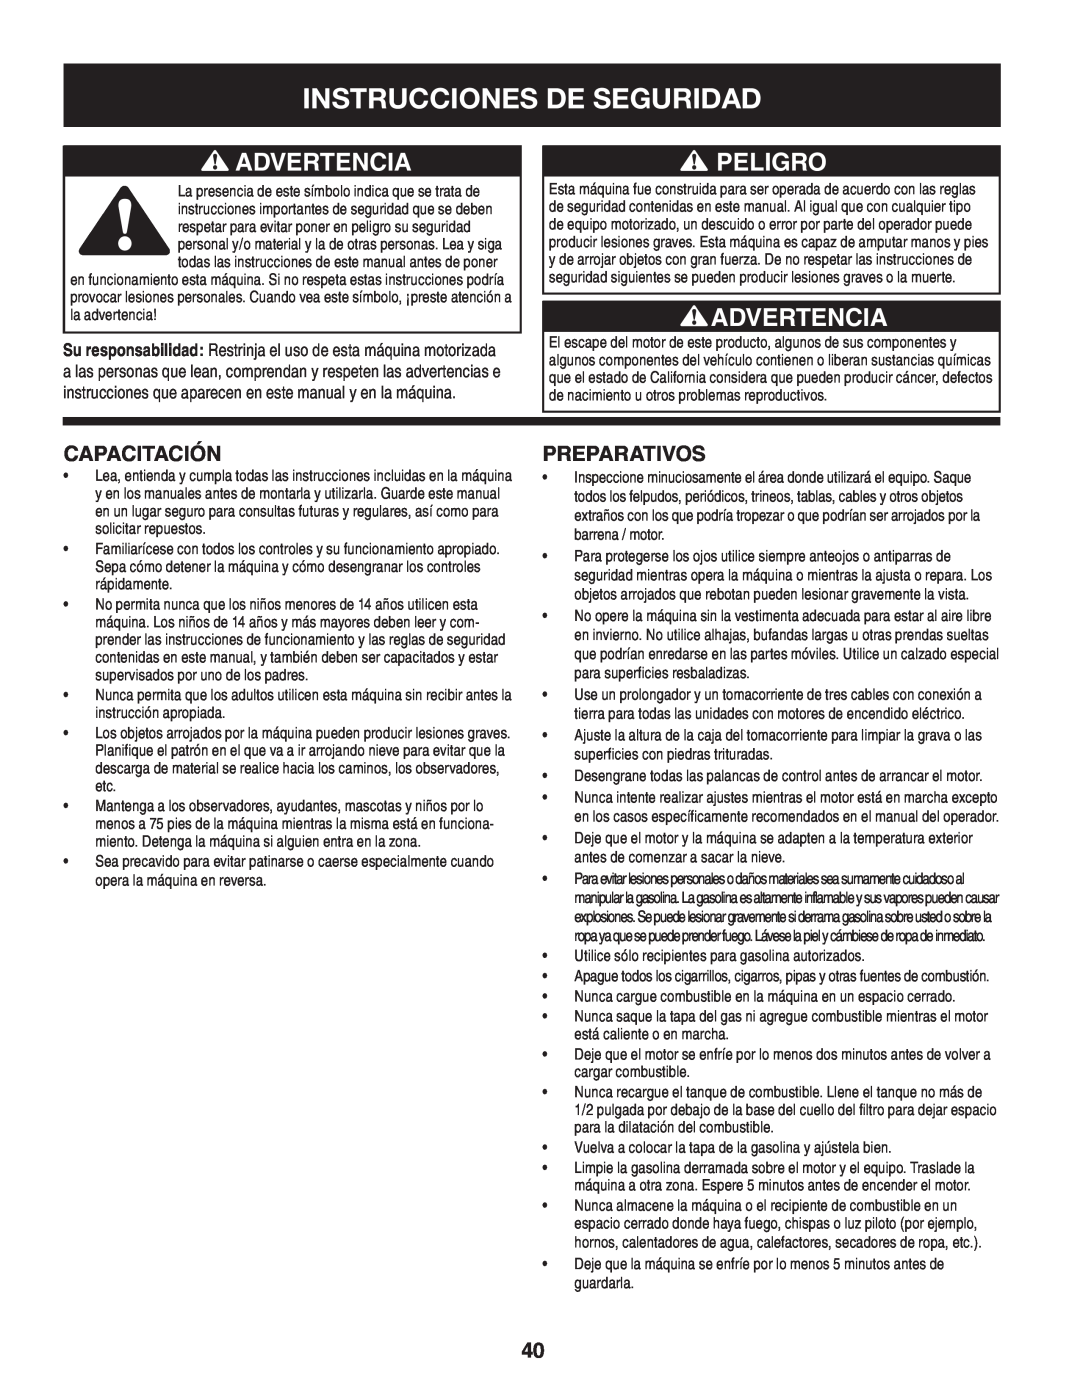 Craftsman 247.88845 manual Instrucciones De Seguridad, Advertencia, Peligro, Capacitación, Preparativos 